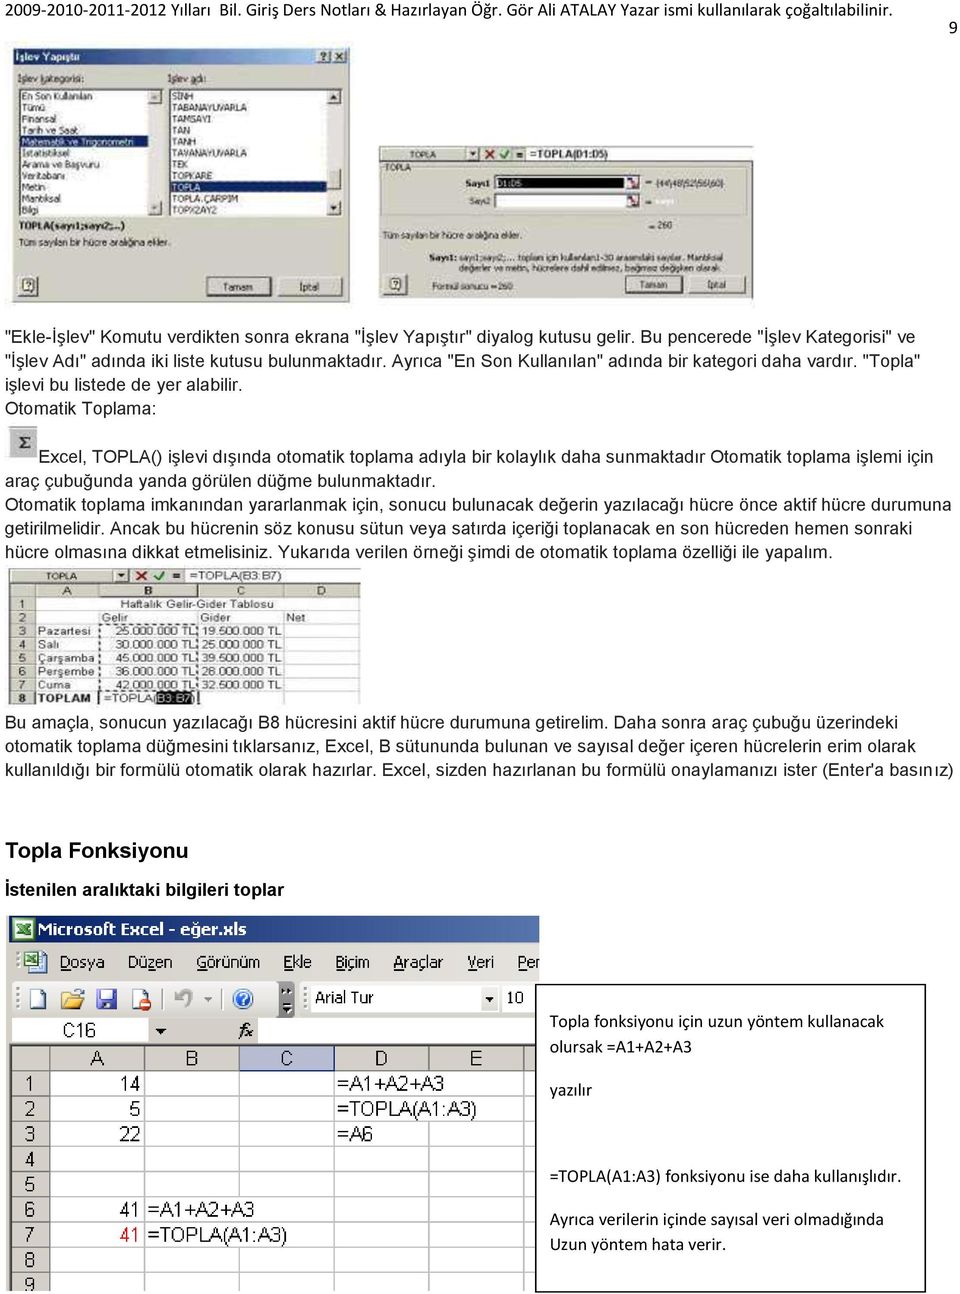 Otomatik Toplama: Excel, TOPLA() iģlevi dıģında otomatik toplama adıyla bir kolaylık daha sunmaktadır Otomatik toplama iģlemi için araç çubuğunda yanda görülen düğme bulunmaktadır.